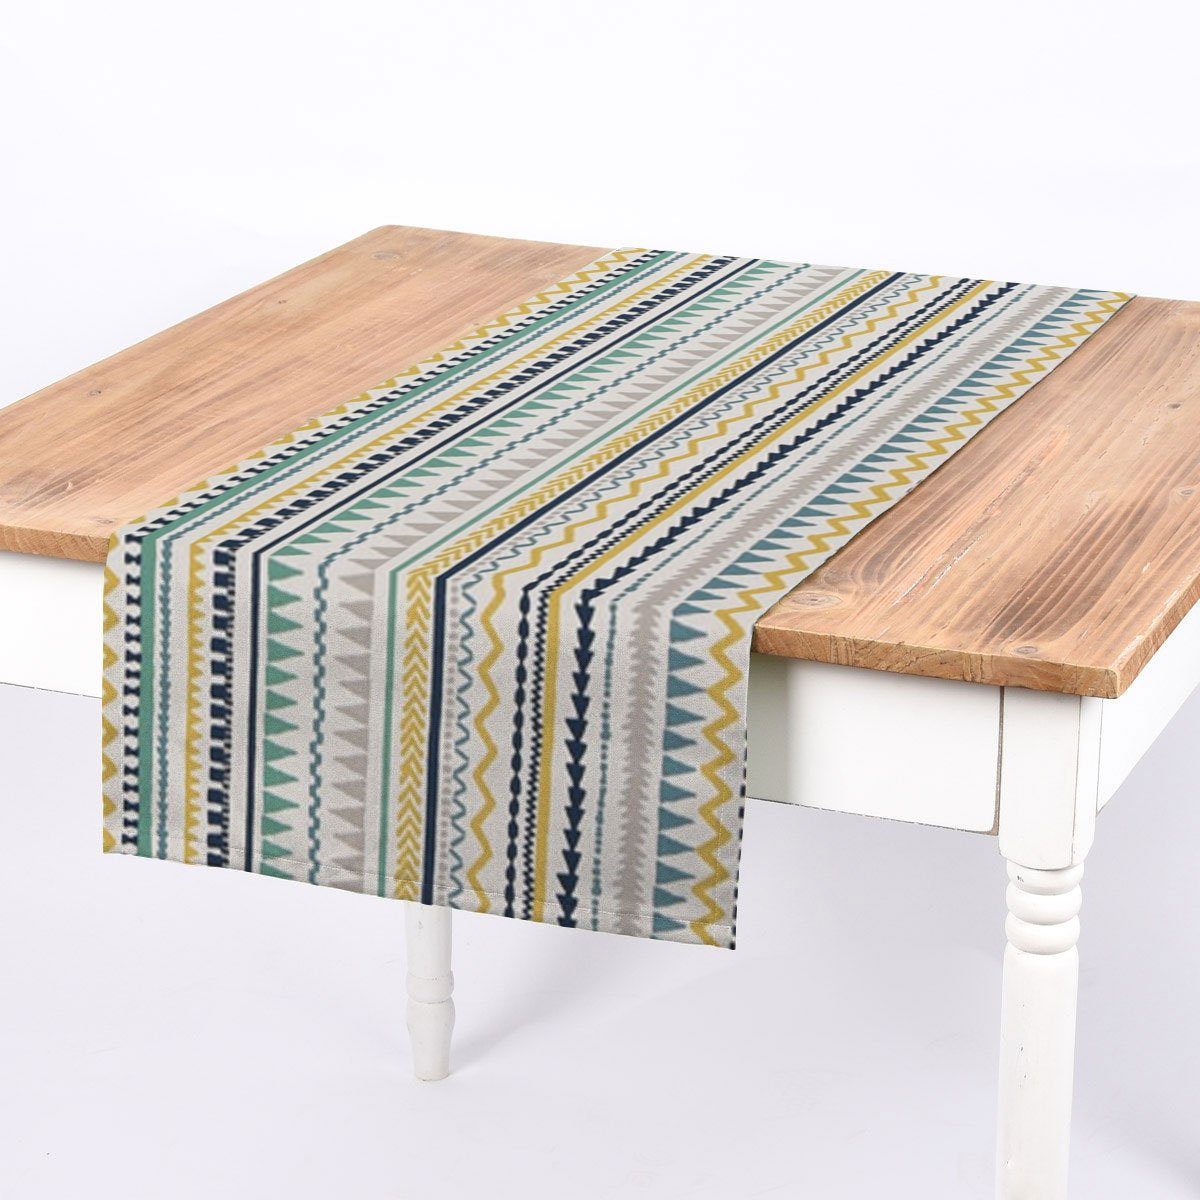 SCHÖNER LEBEN. Tischläufer SCHÖNER LEBEN. Tischläufer Streifen gelb, handmade grau Inka Ethno blau weiß